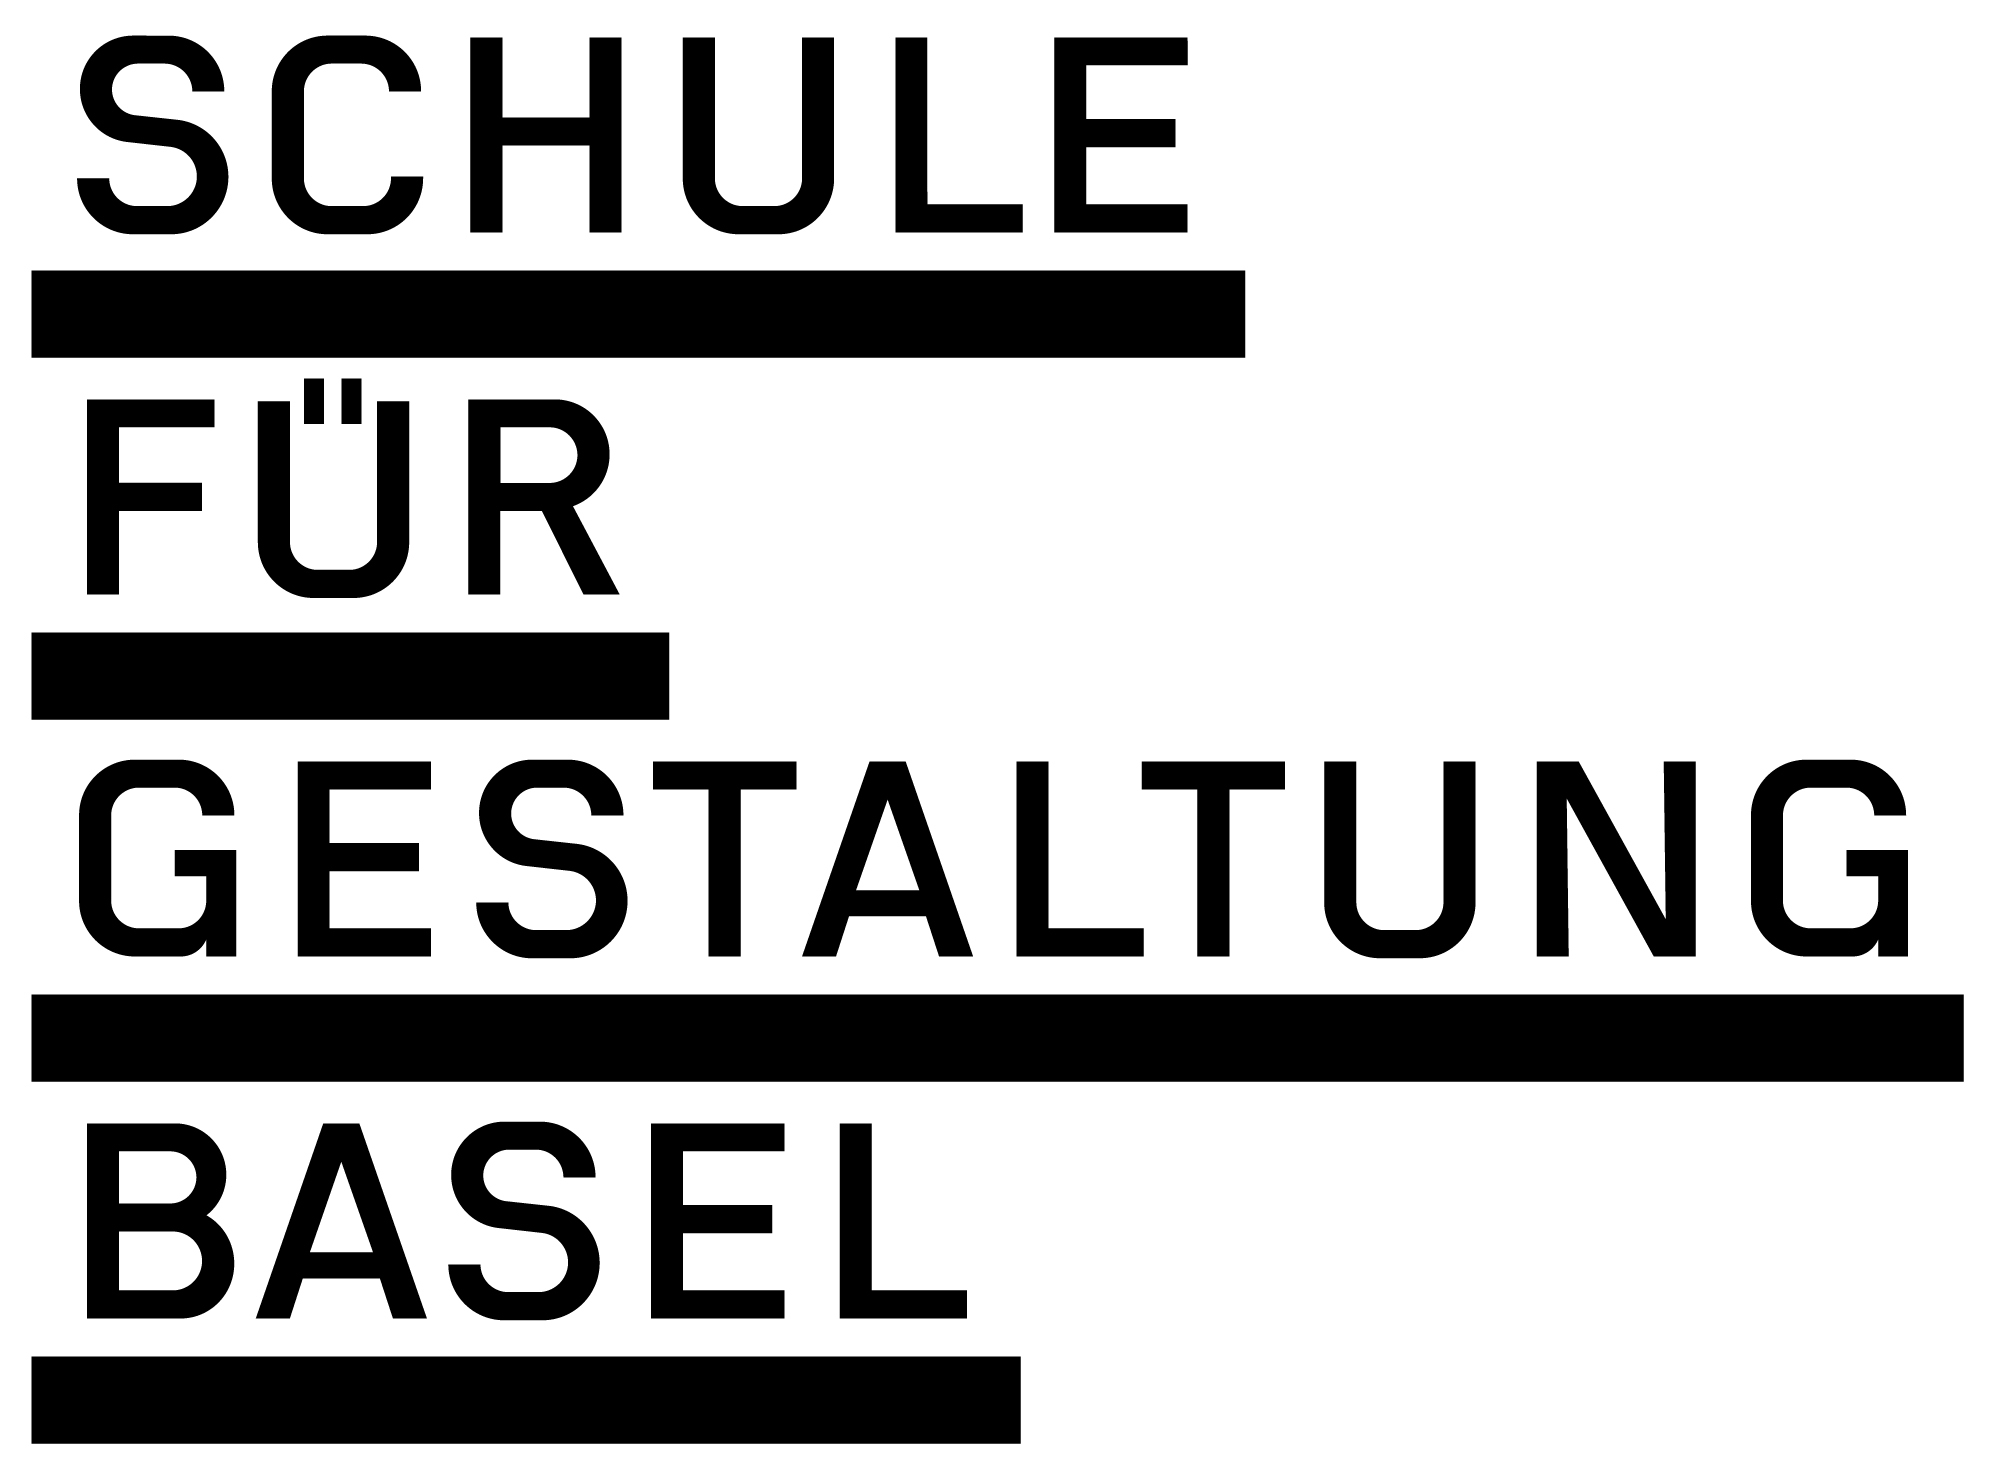 Schule für Gestaltung Basel